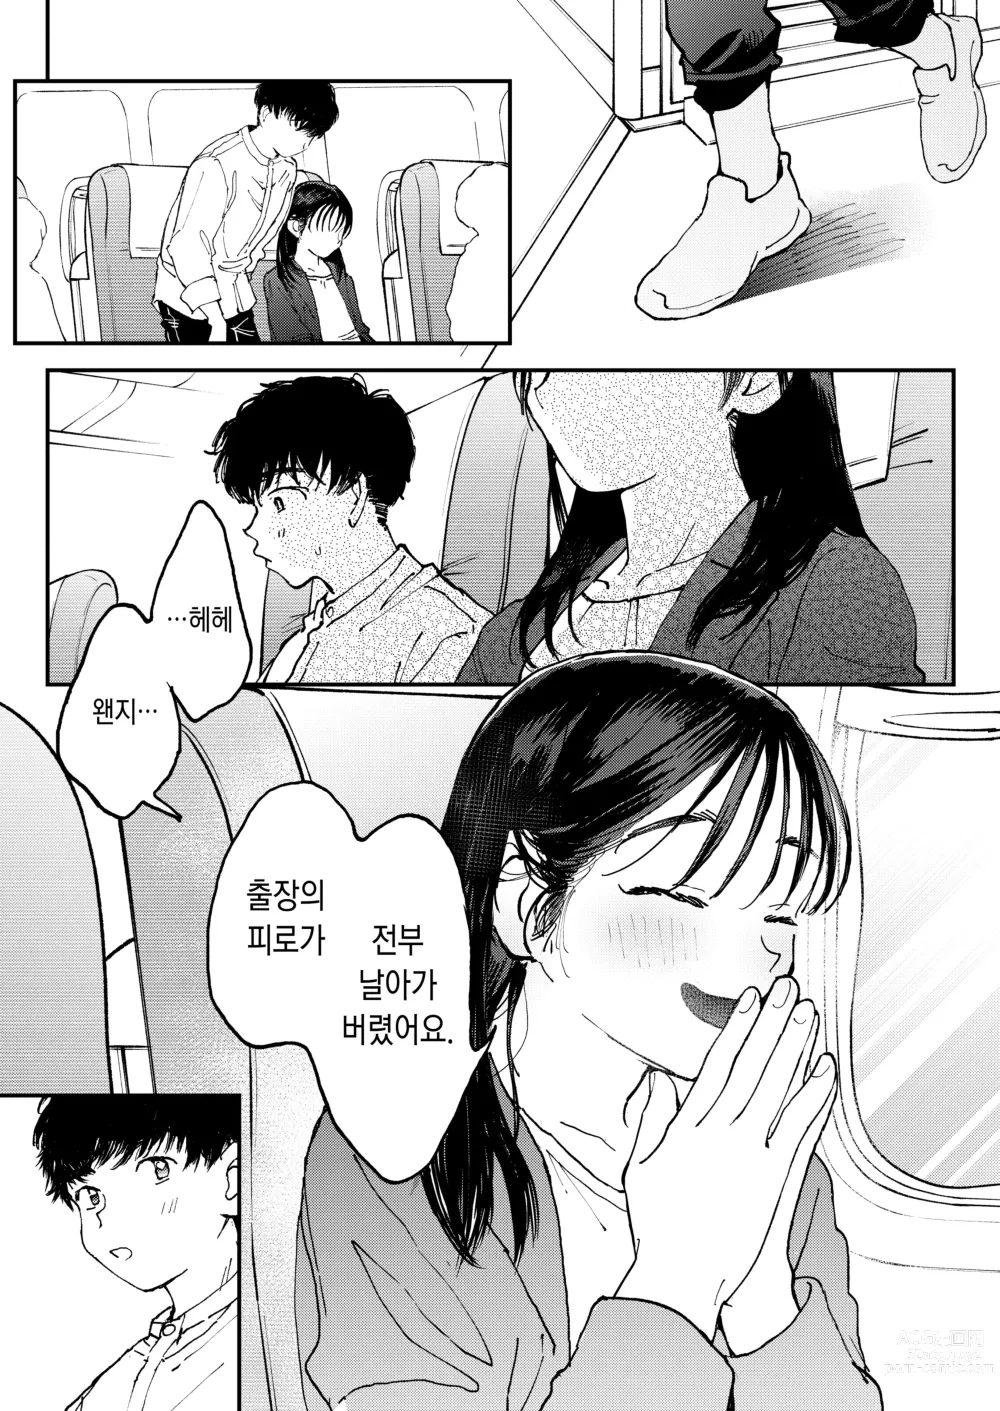 Page 46 of doujinshi 발정난 OL은 비행기 안에서도 성욕을 채우고 싶다